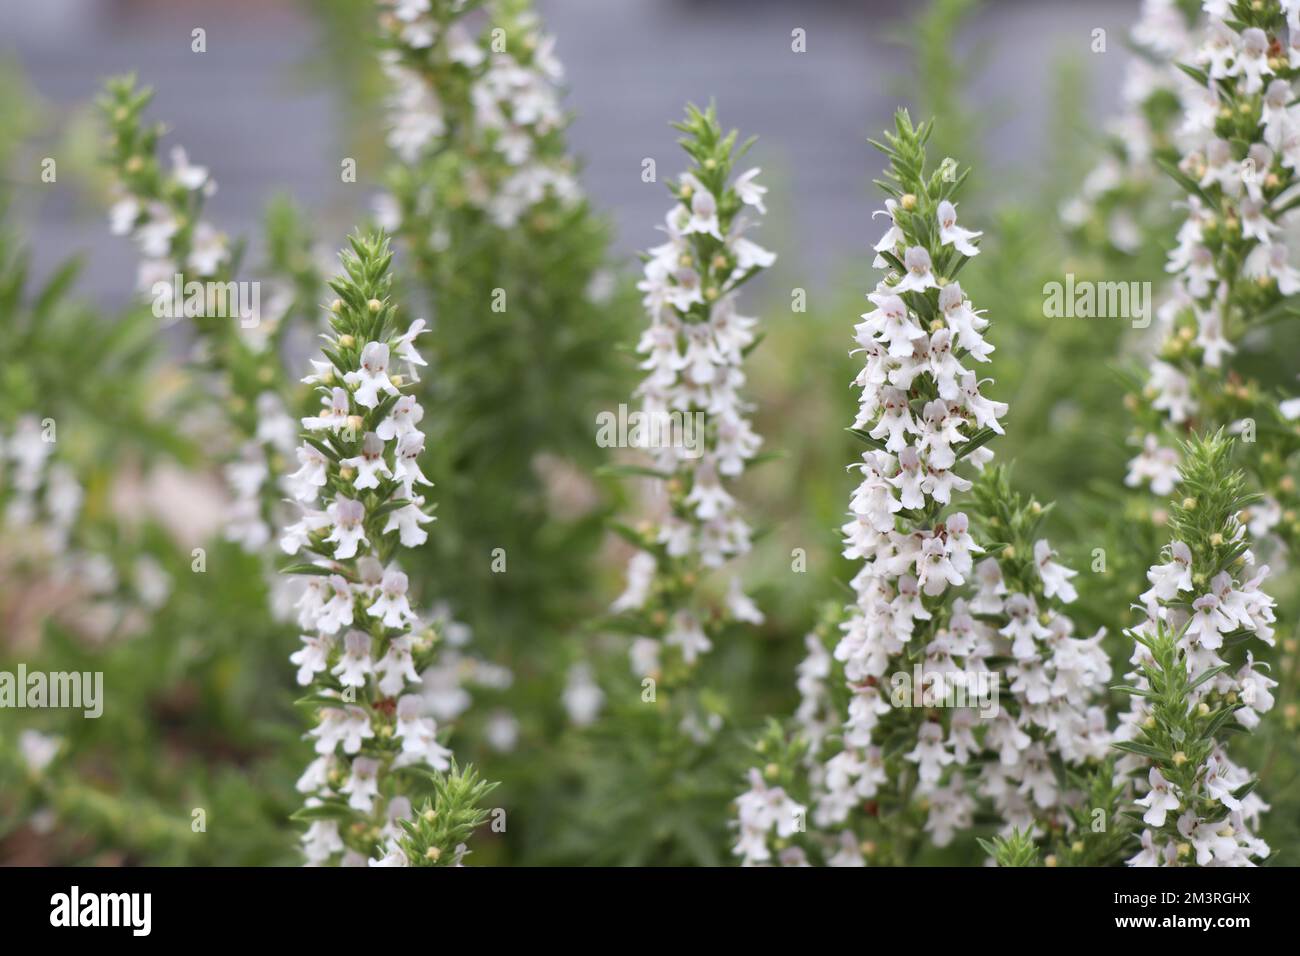 White Blooming herb Satureja montana Stock Photo